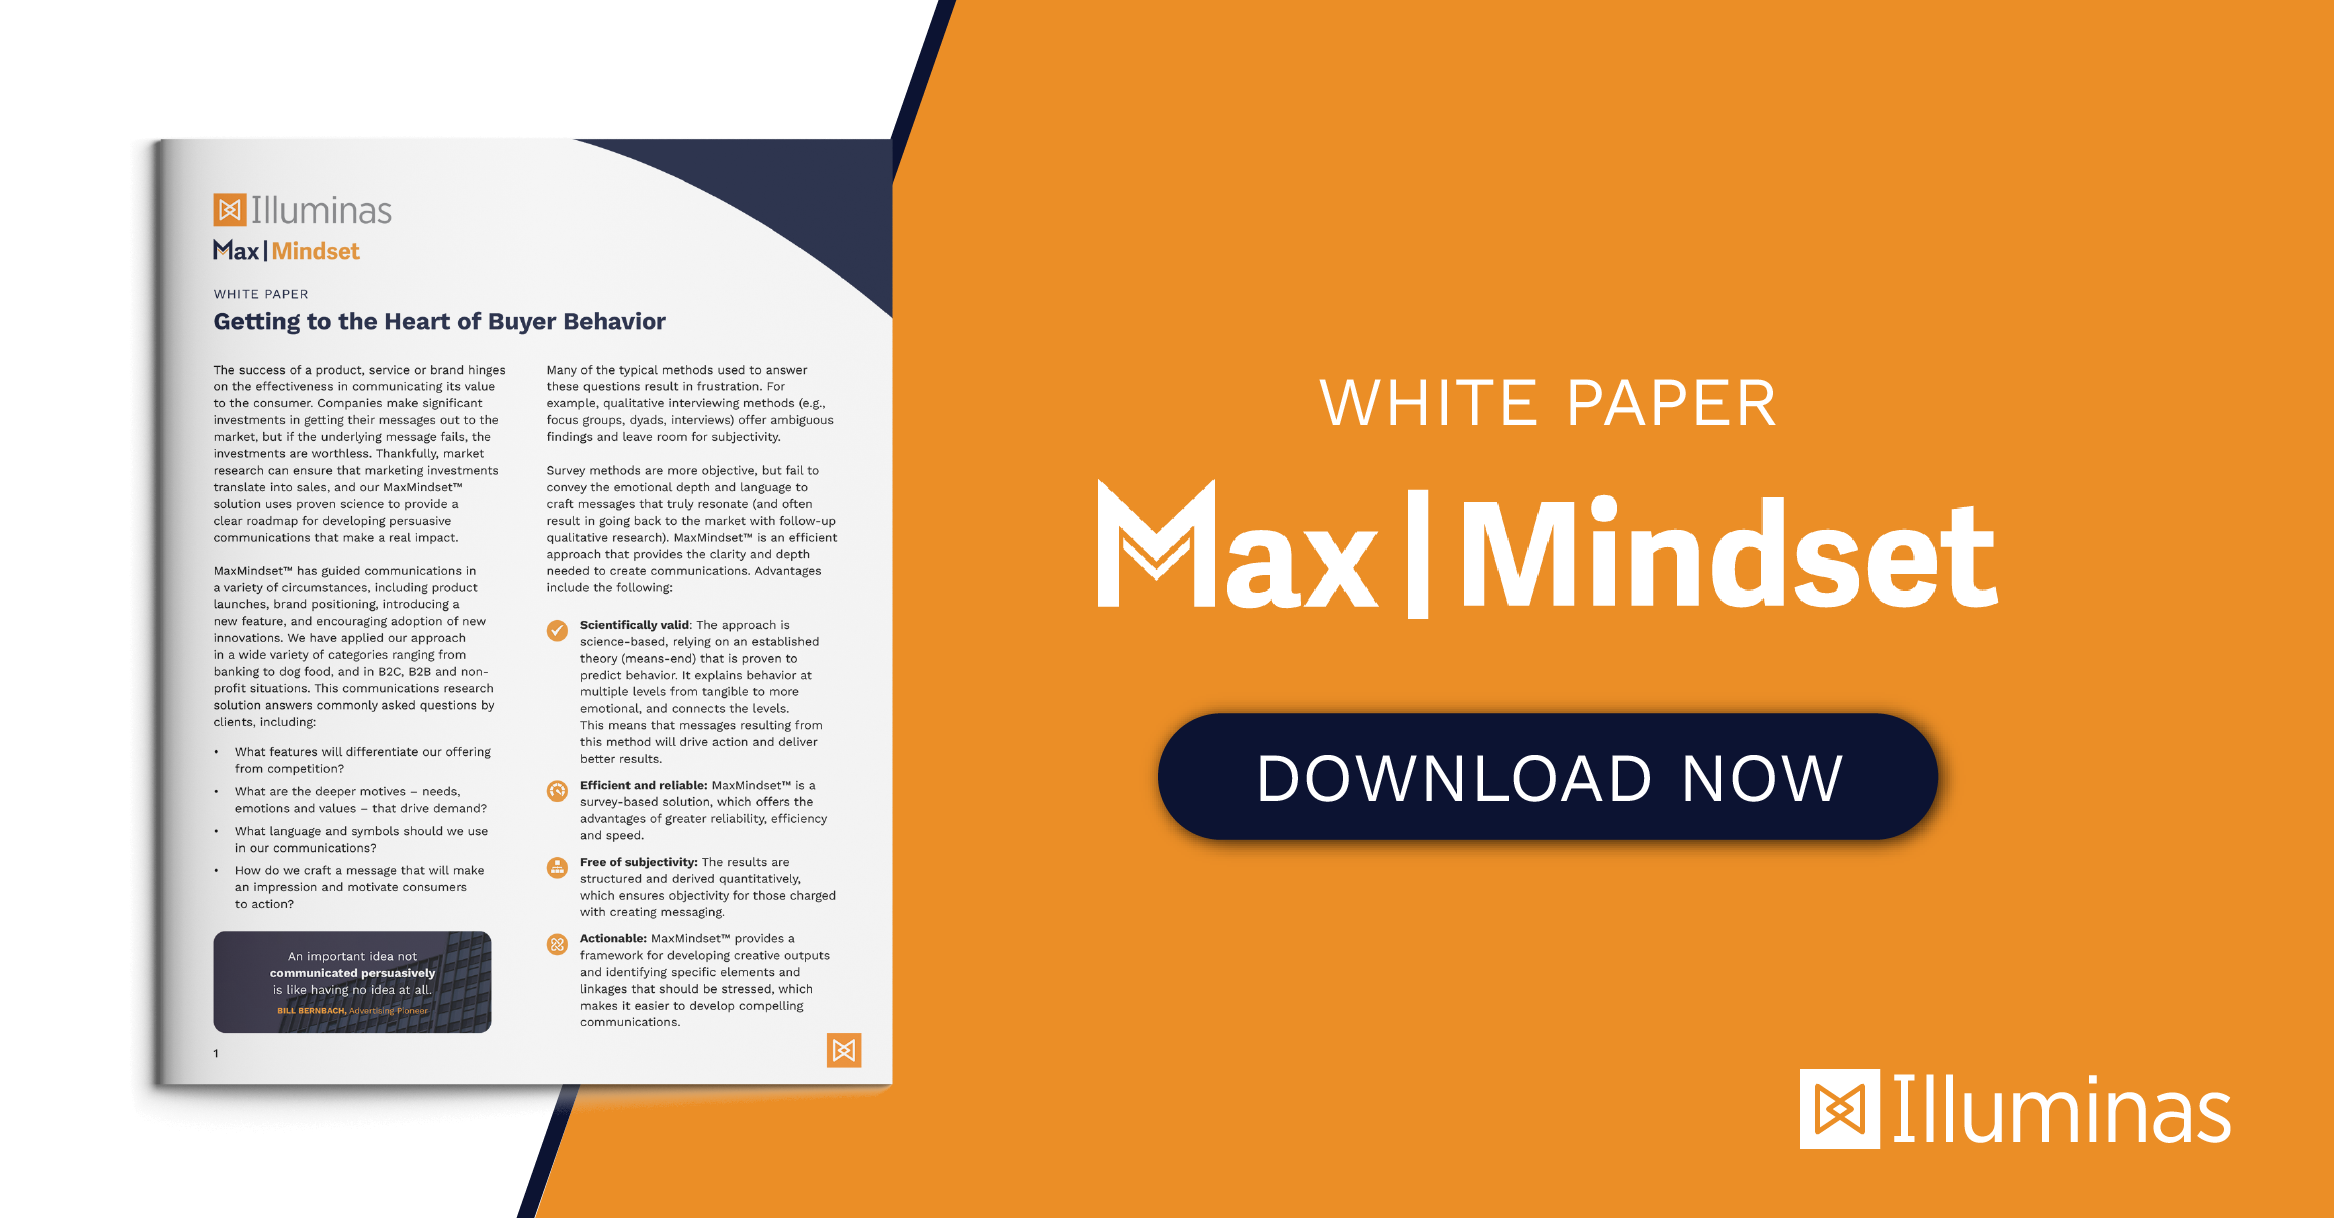 MaxMindset white paper cover image